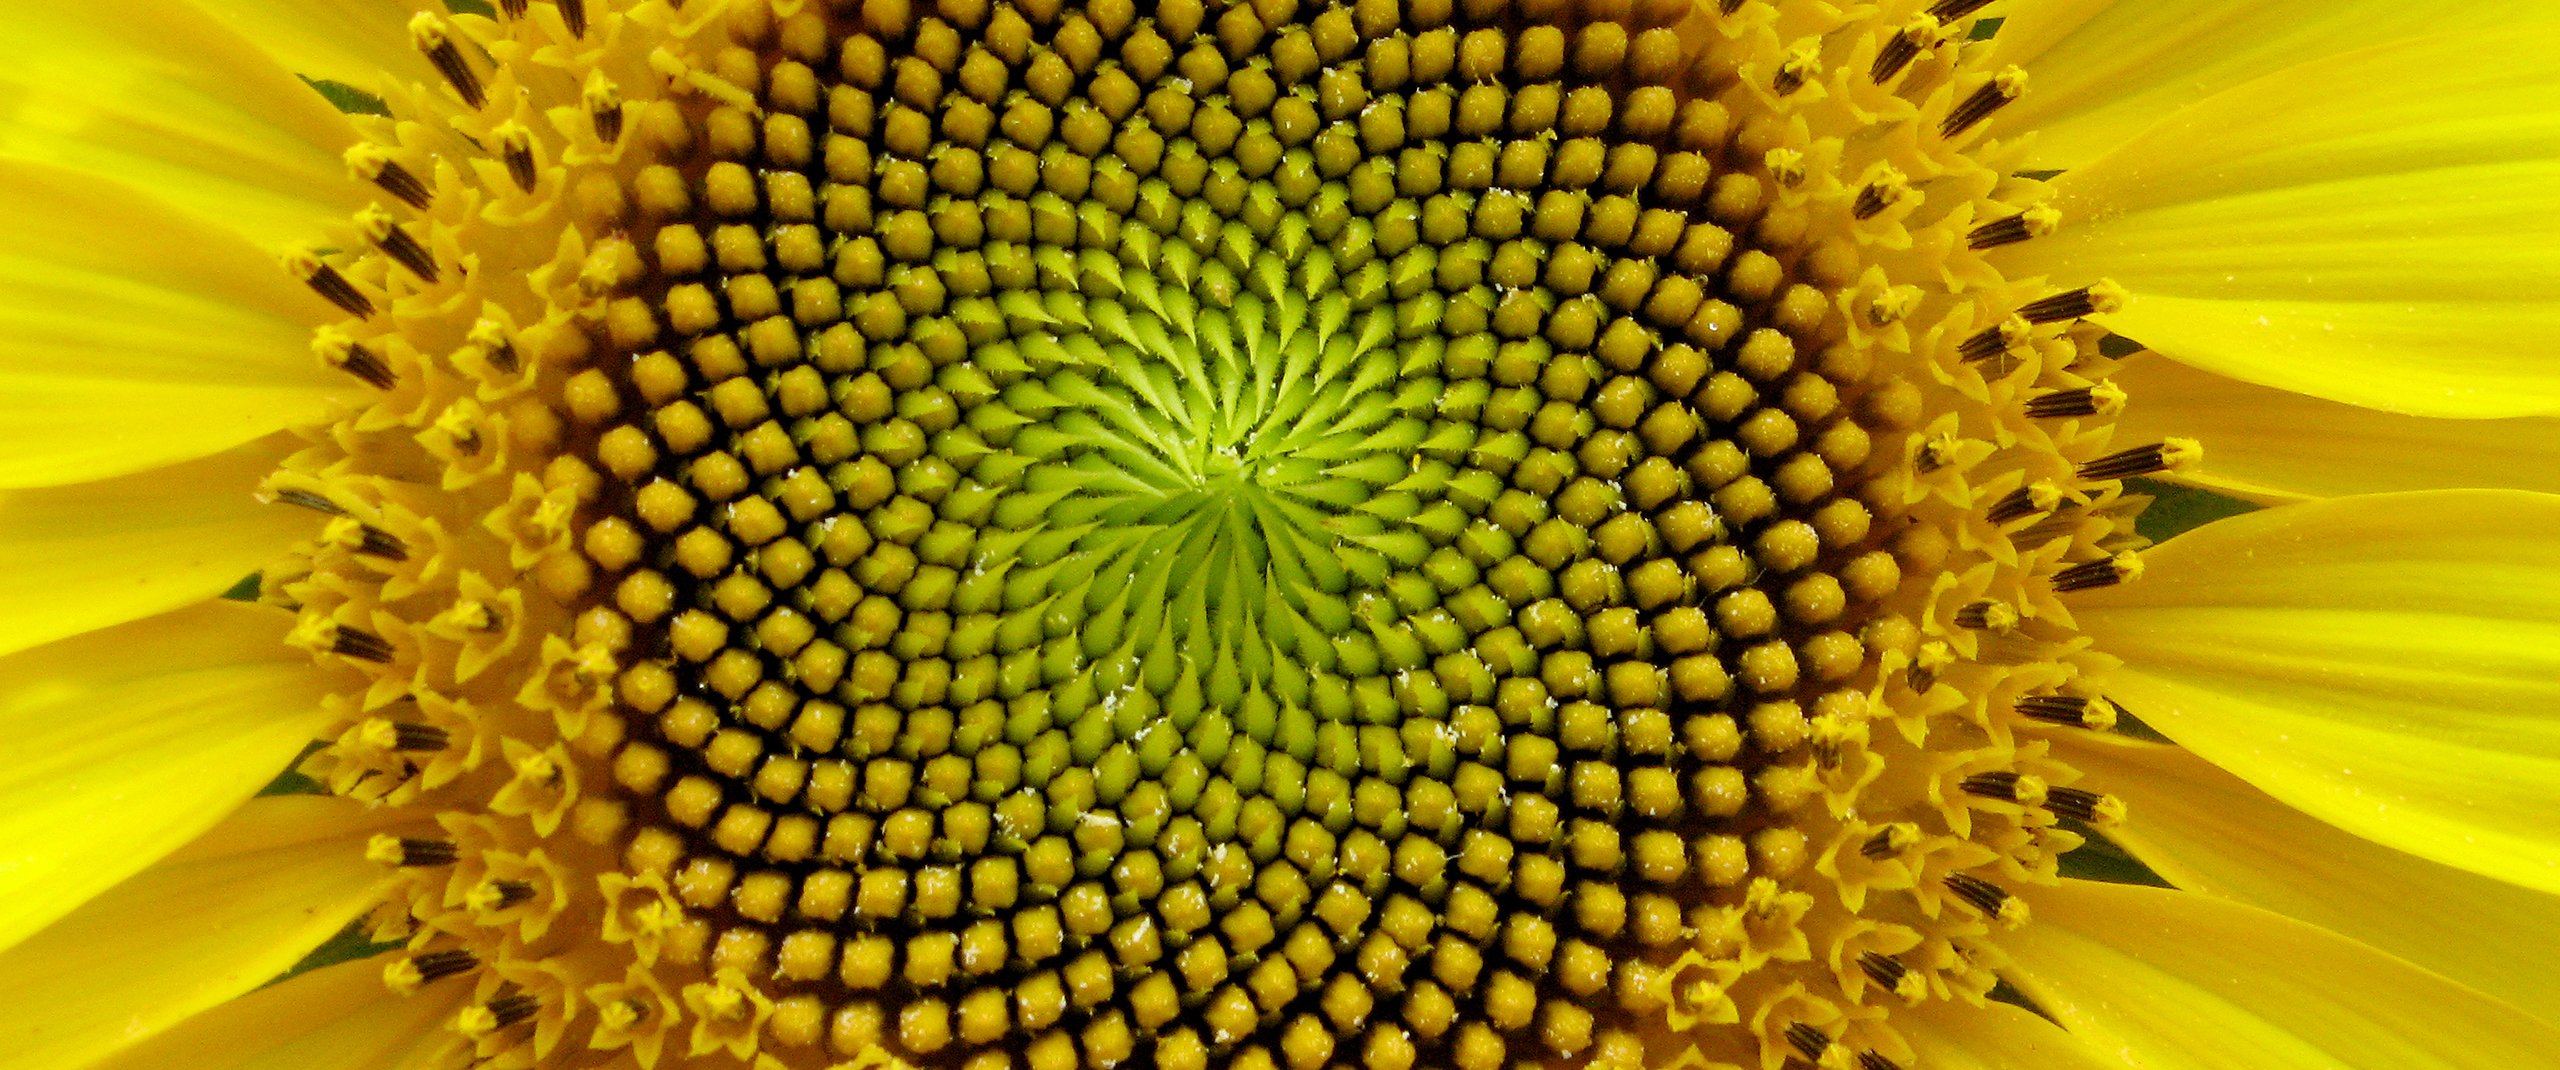 Closeup of the spiral center of a sunflower